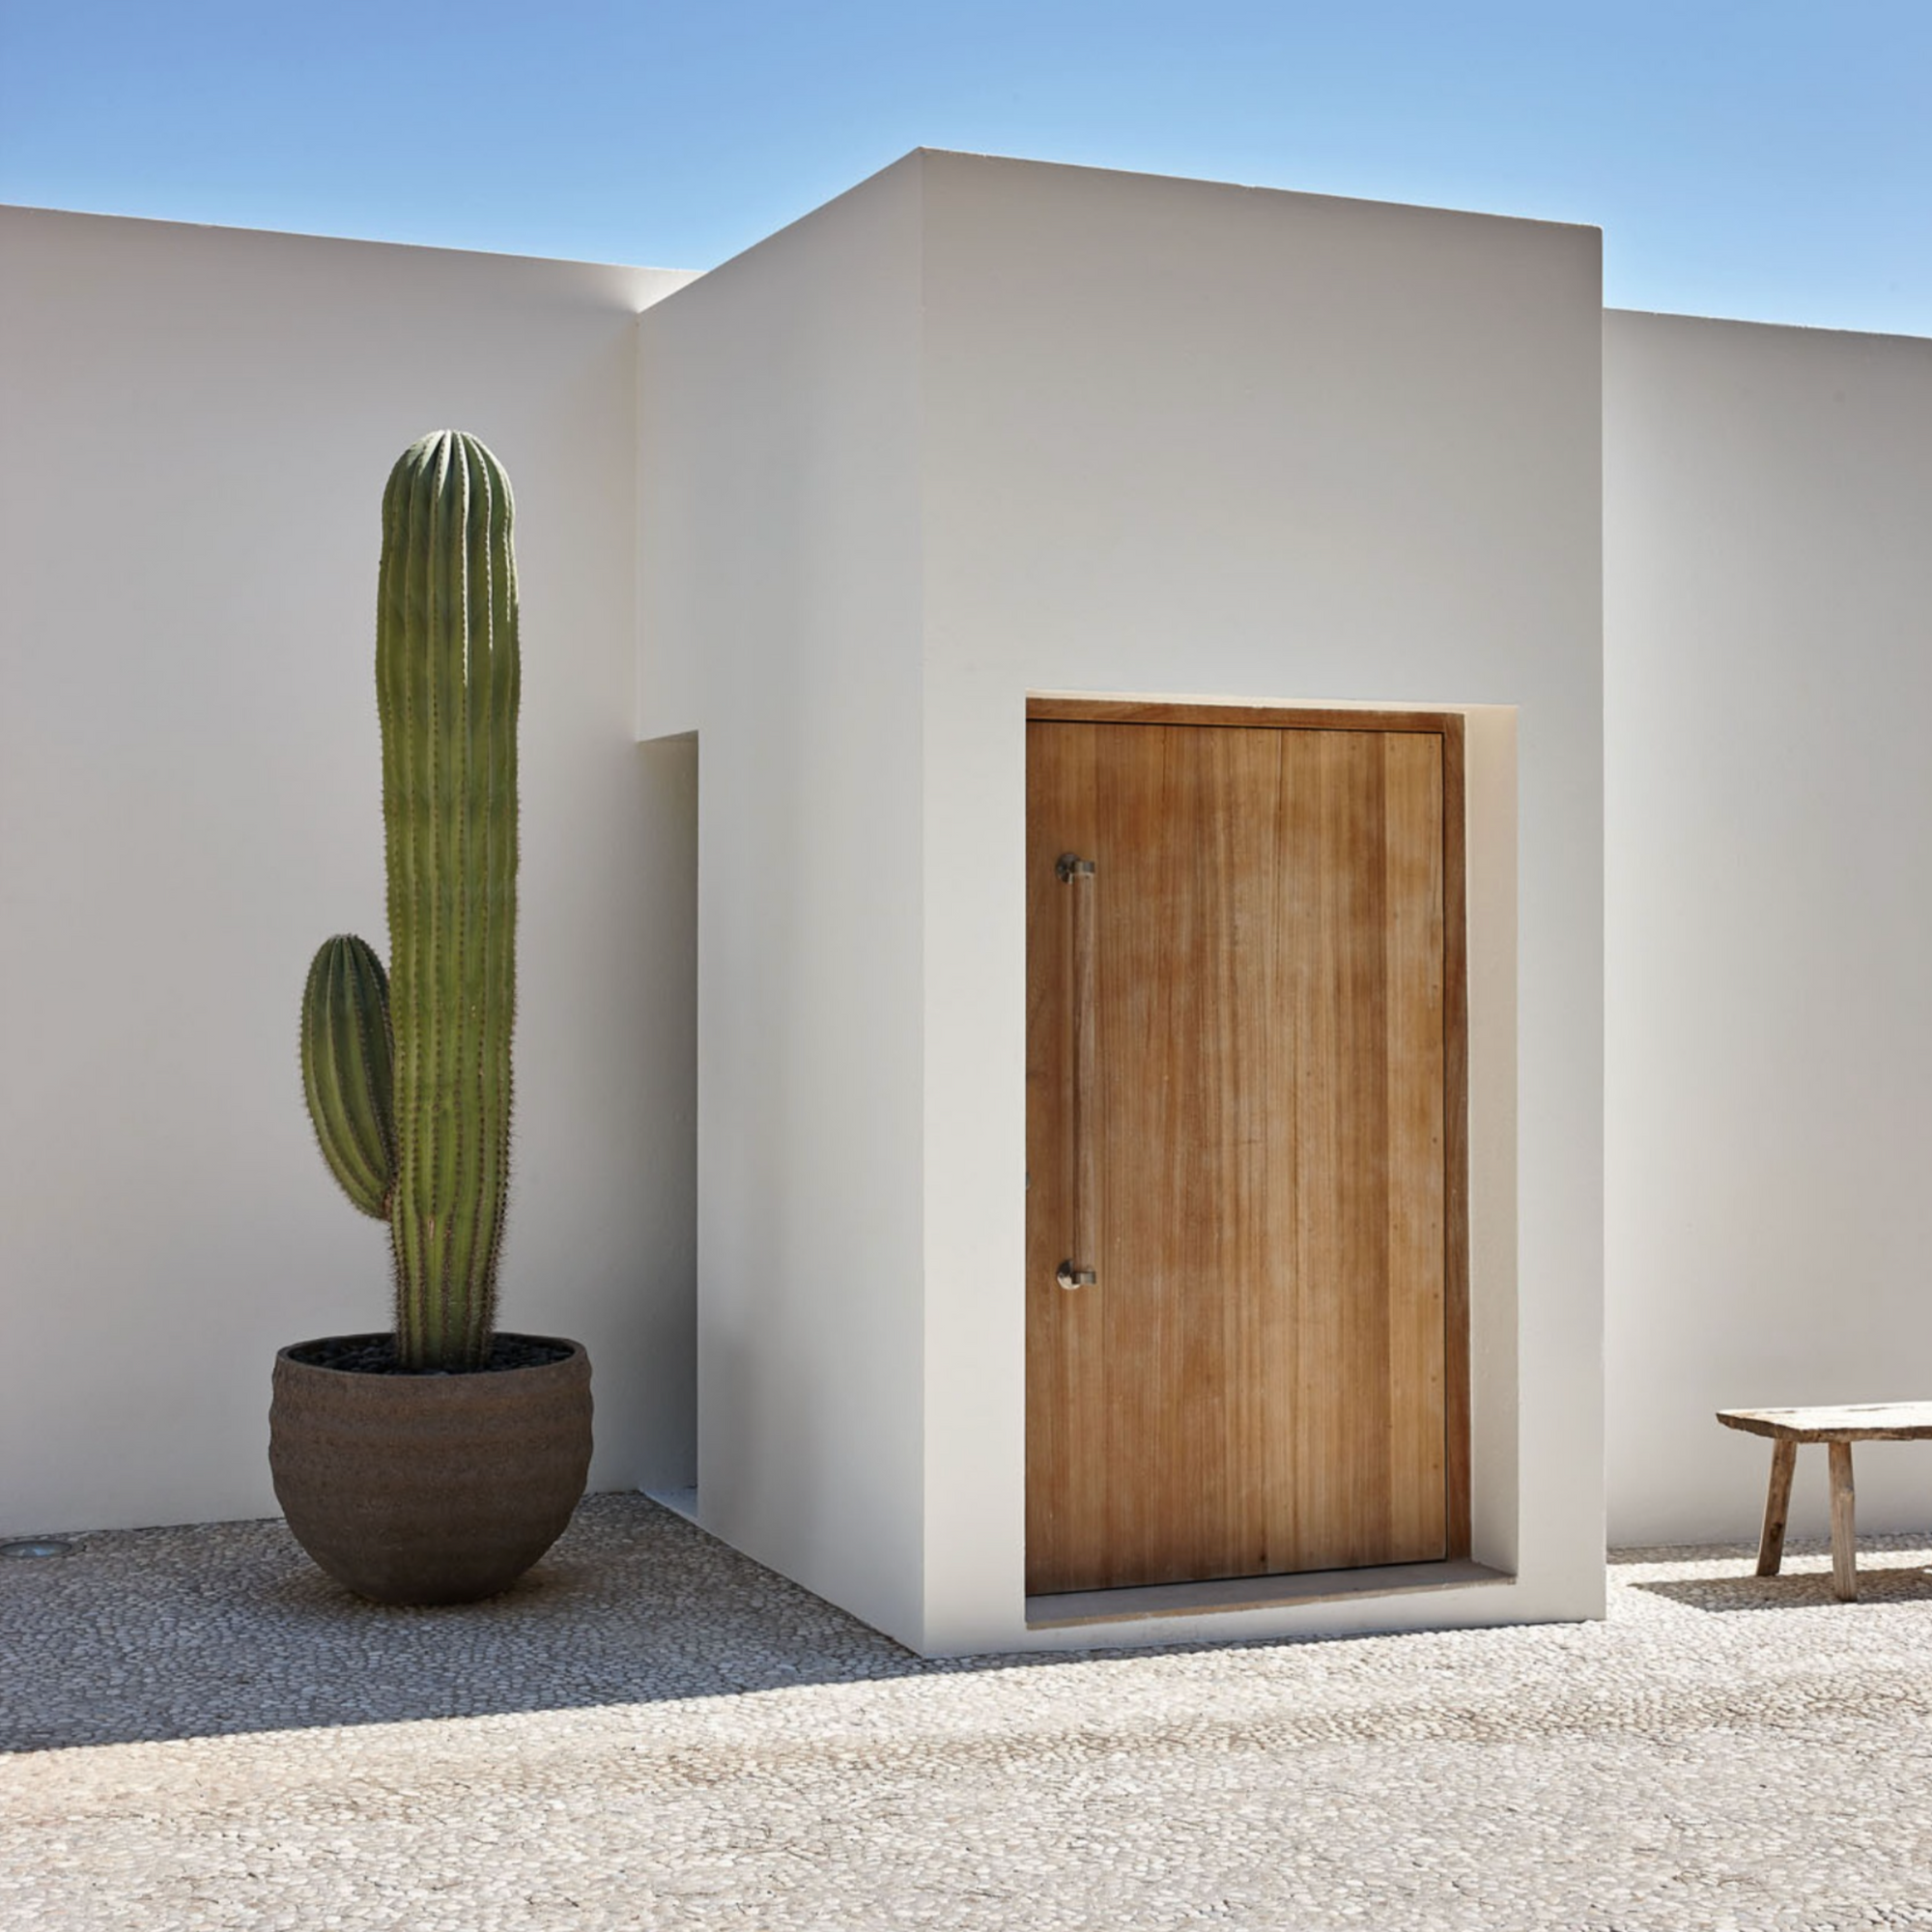 Atelier Vierkant UR90 mit einem Kaktus vor einer weißen Hauswand auf Mallorca.